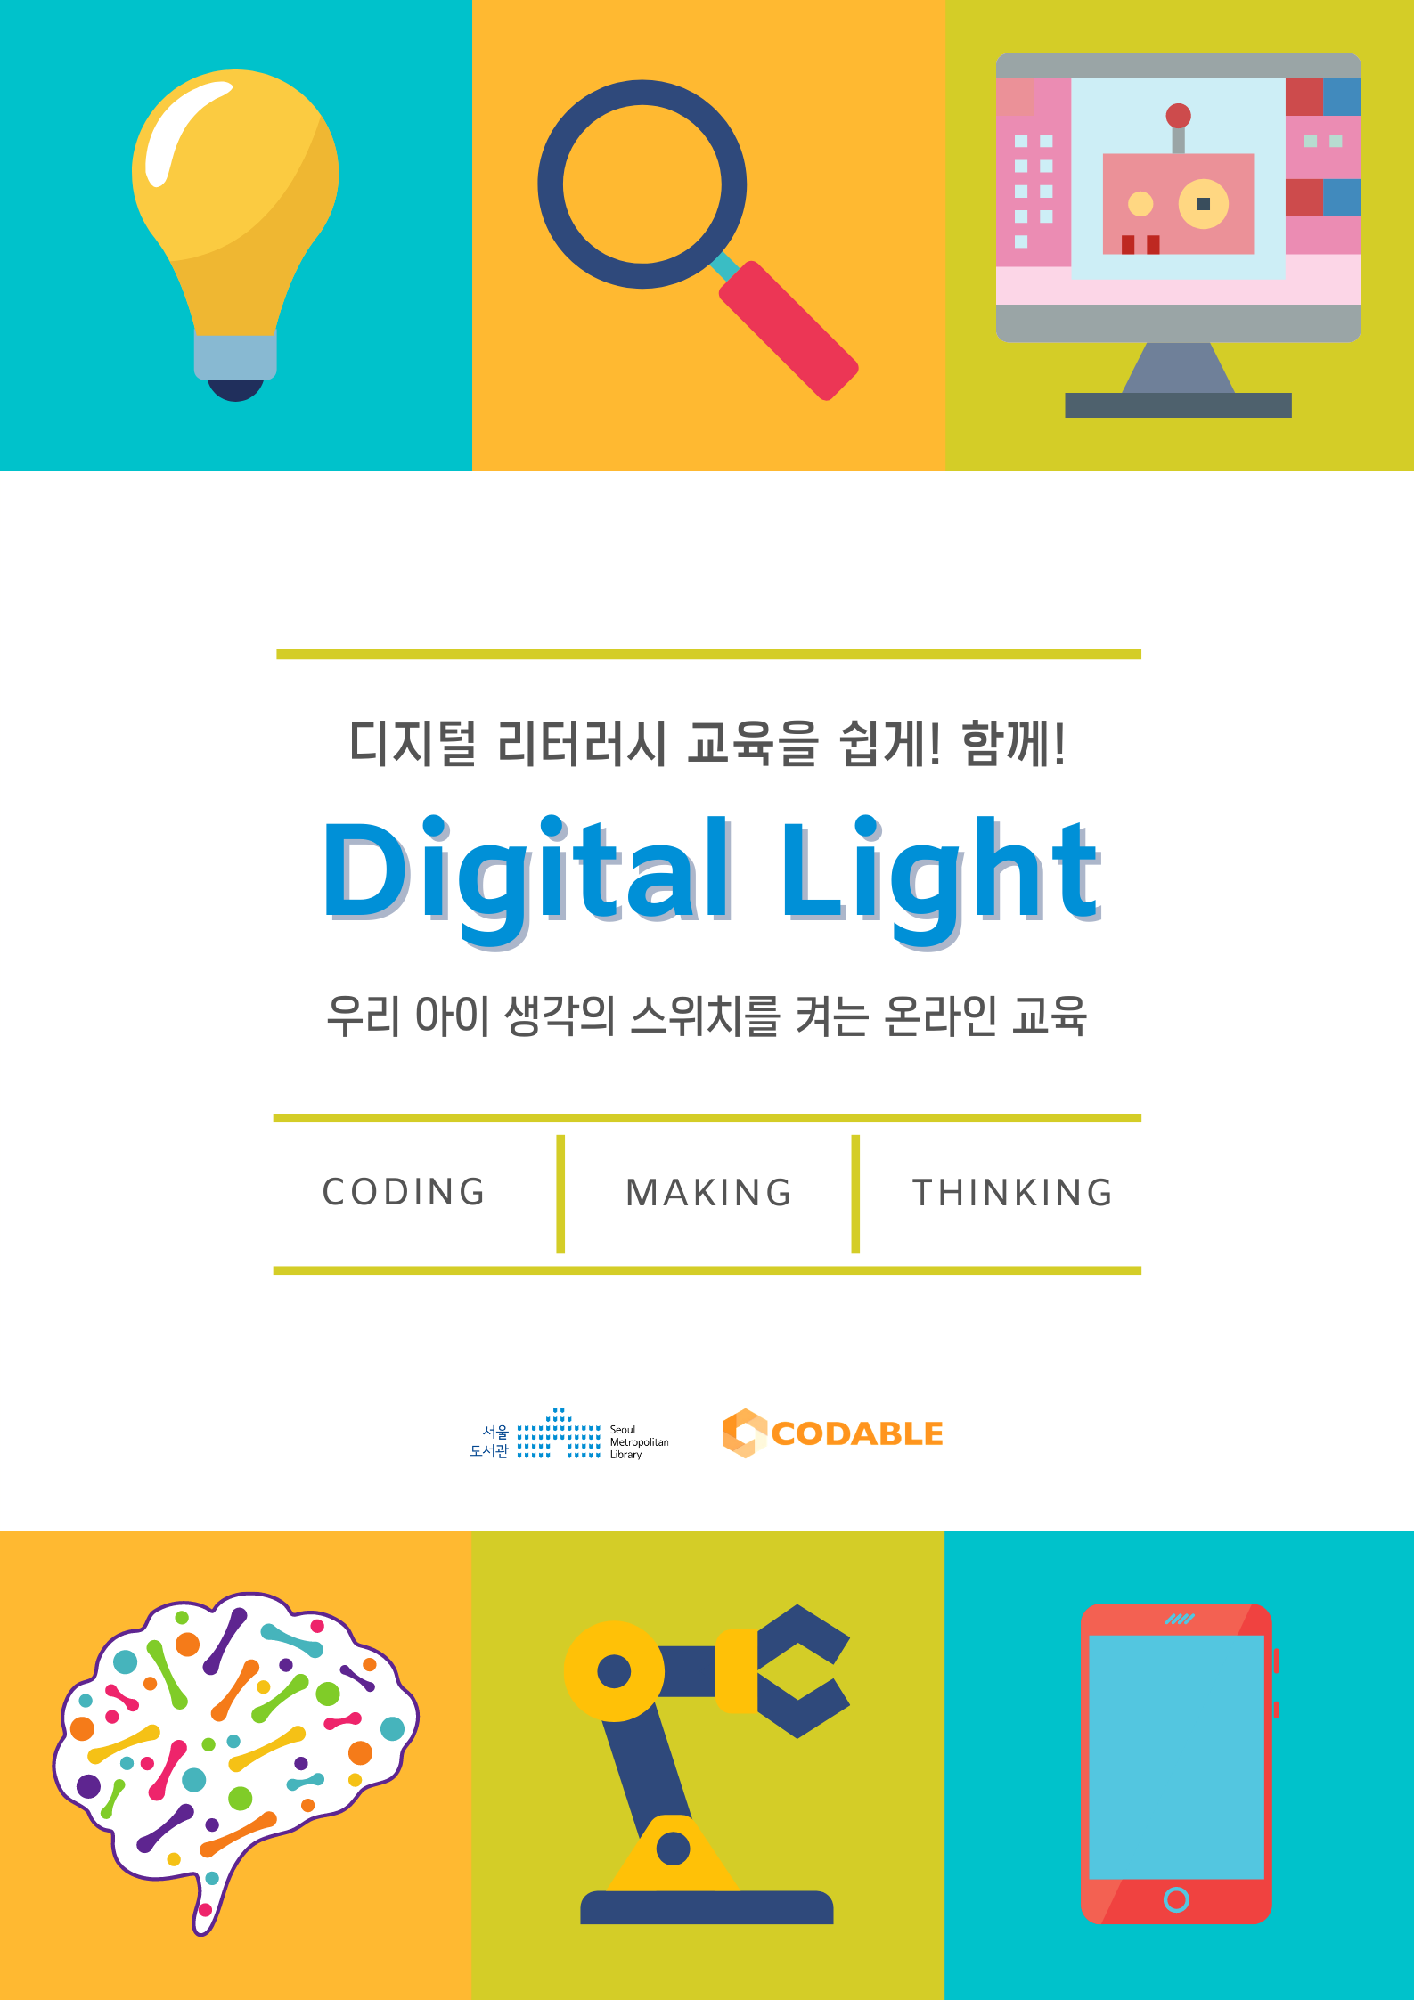 디지털 리터러시 교육을 쉽게! 함께! DIgital Light, 우리 아이 생각의 스위치를 켜는 온라인 교육(CODING, MAKING, THINKING)